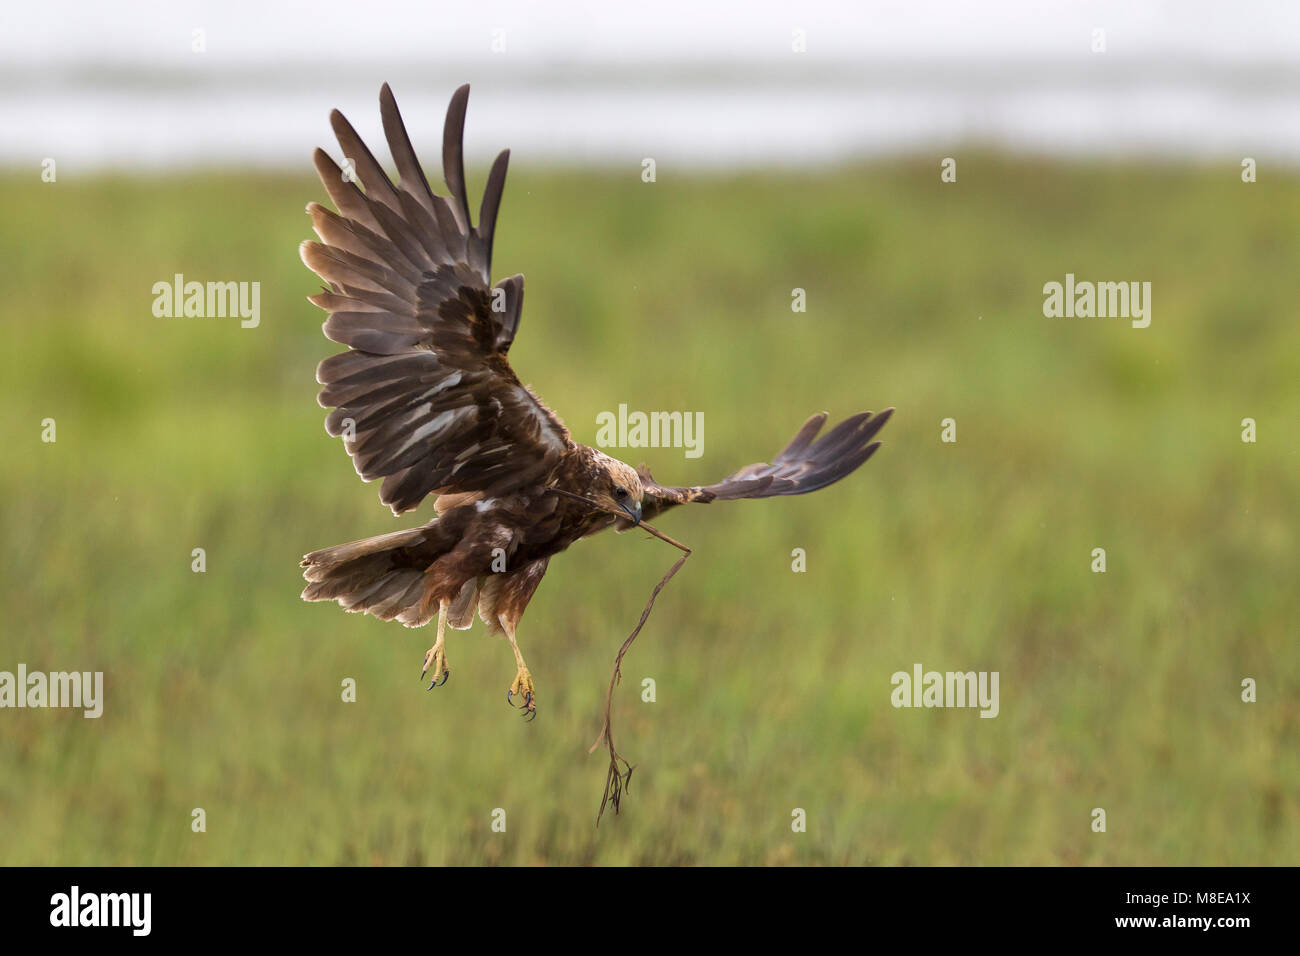 Vrouwtje Bruine Kiekendief in de vlucht met nestmateriaal; Weiblicher Rohrweihe im Flug mit Nistmaterial Stockfoto